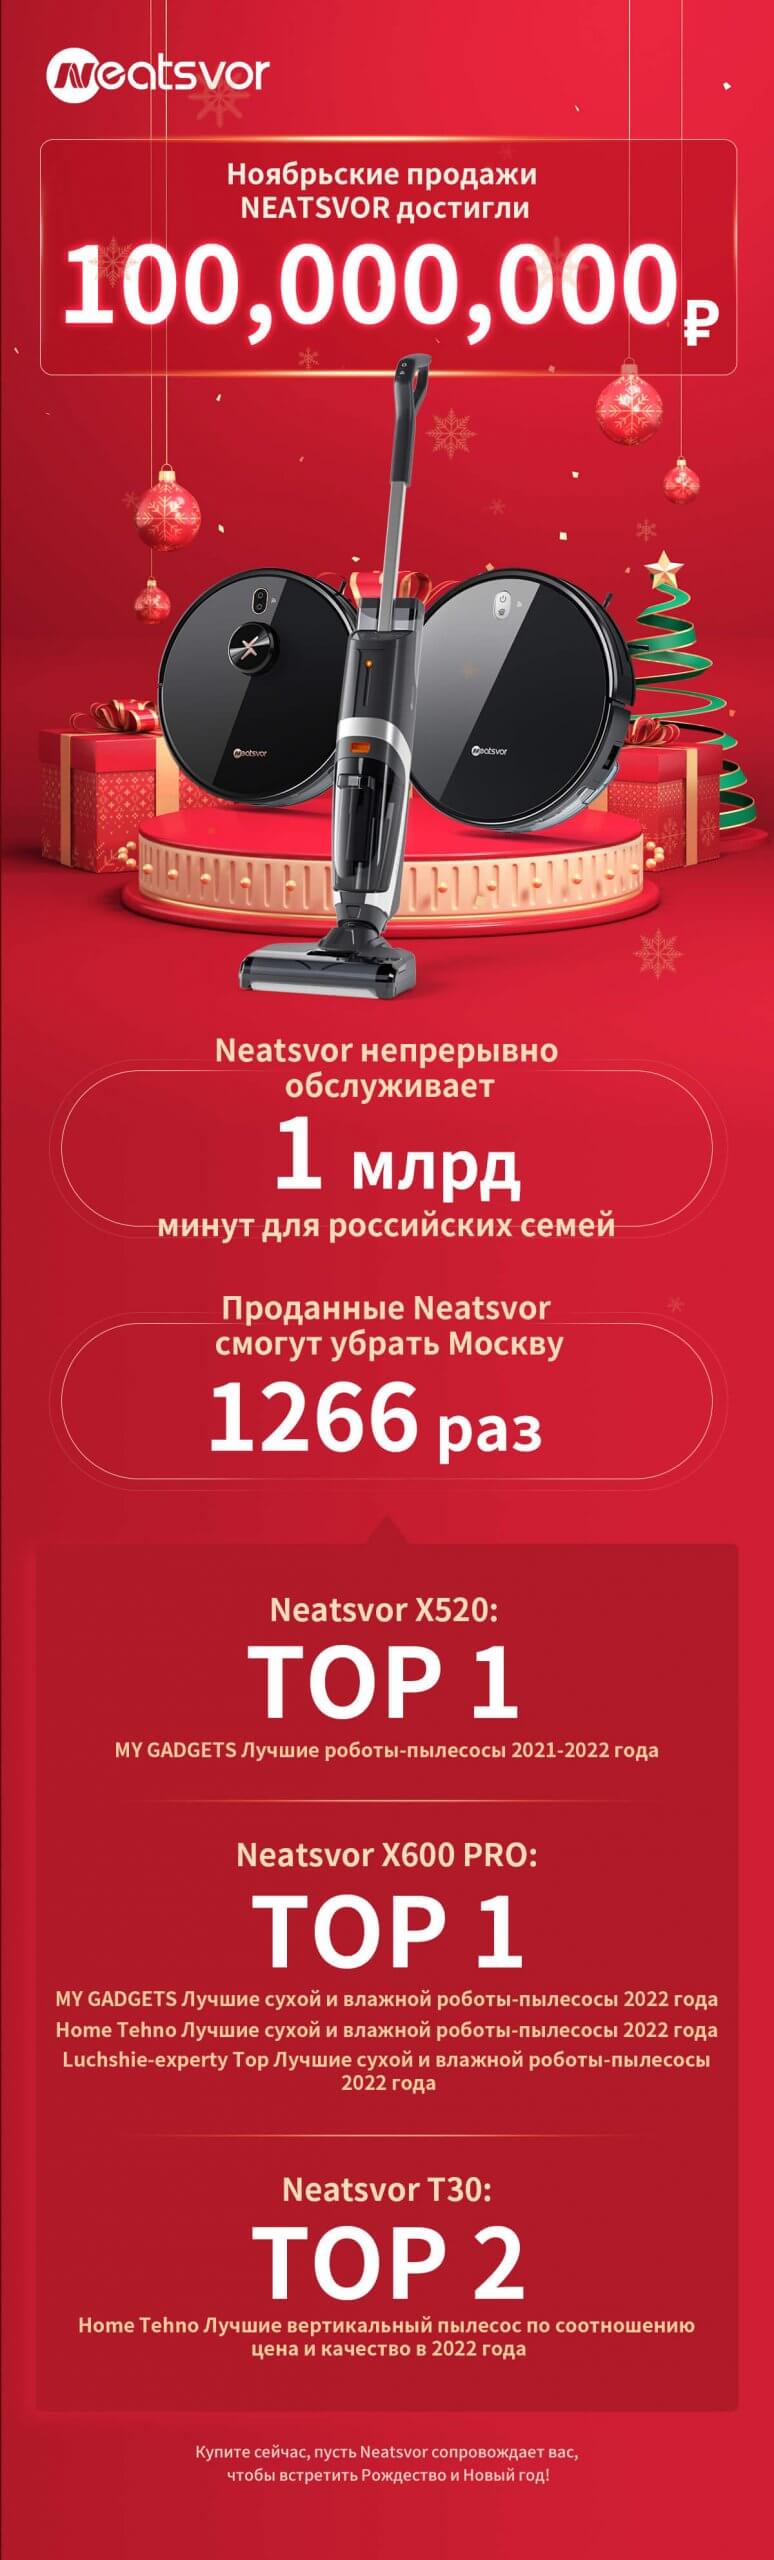 Продажи пылесосов Neatsvor в России в ноябре превысили 100 миллионов рублей